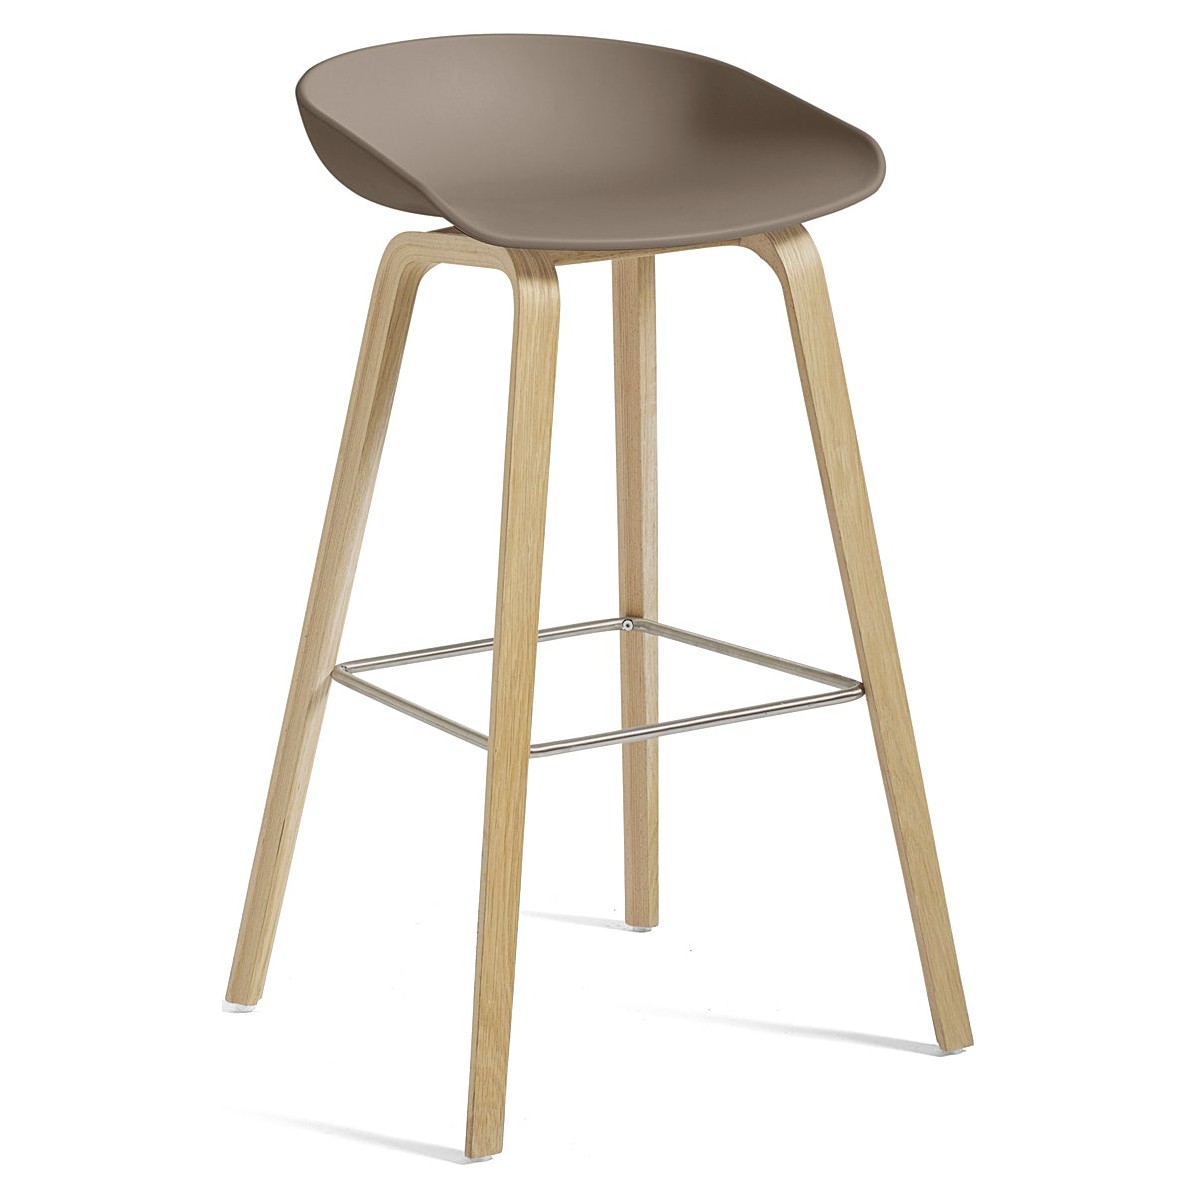 AAS32 Bar stool Khaki shell + Oak base